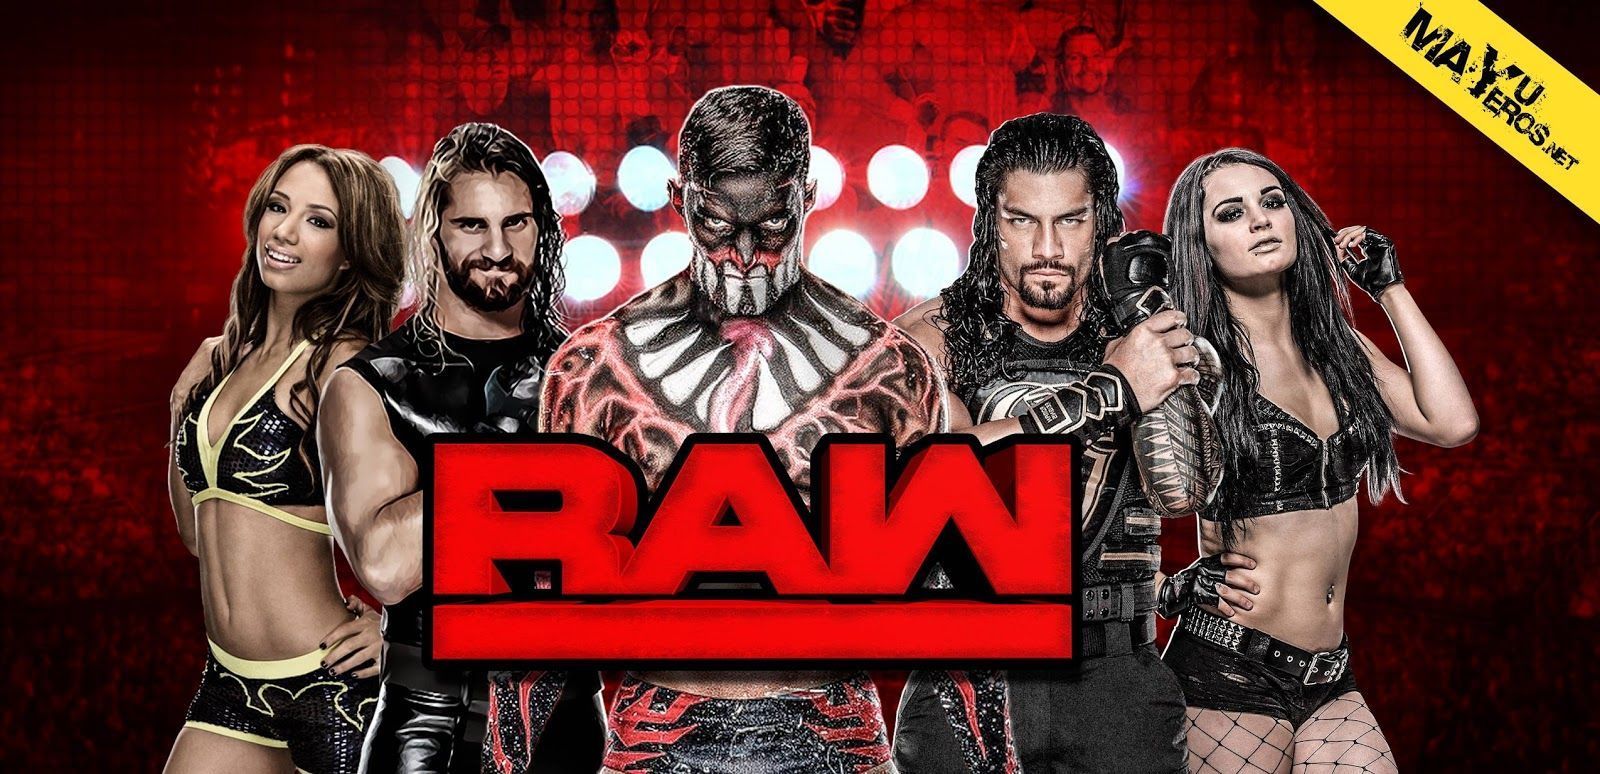 wwe-raw-hd-wallpapers | WWE Raw HD Fondos de pantalla | Wwe, imágenes de alta definición, HD